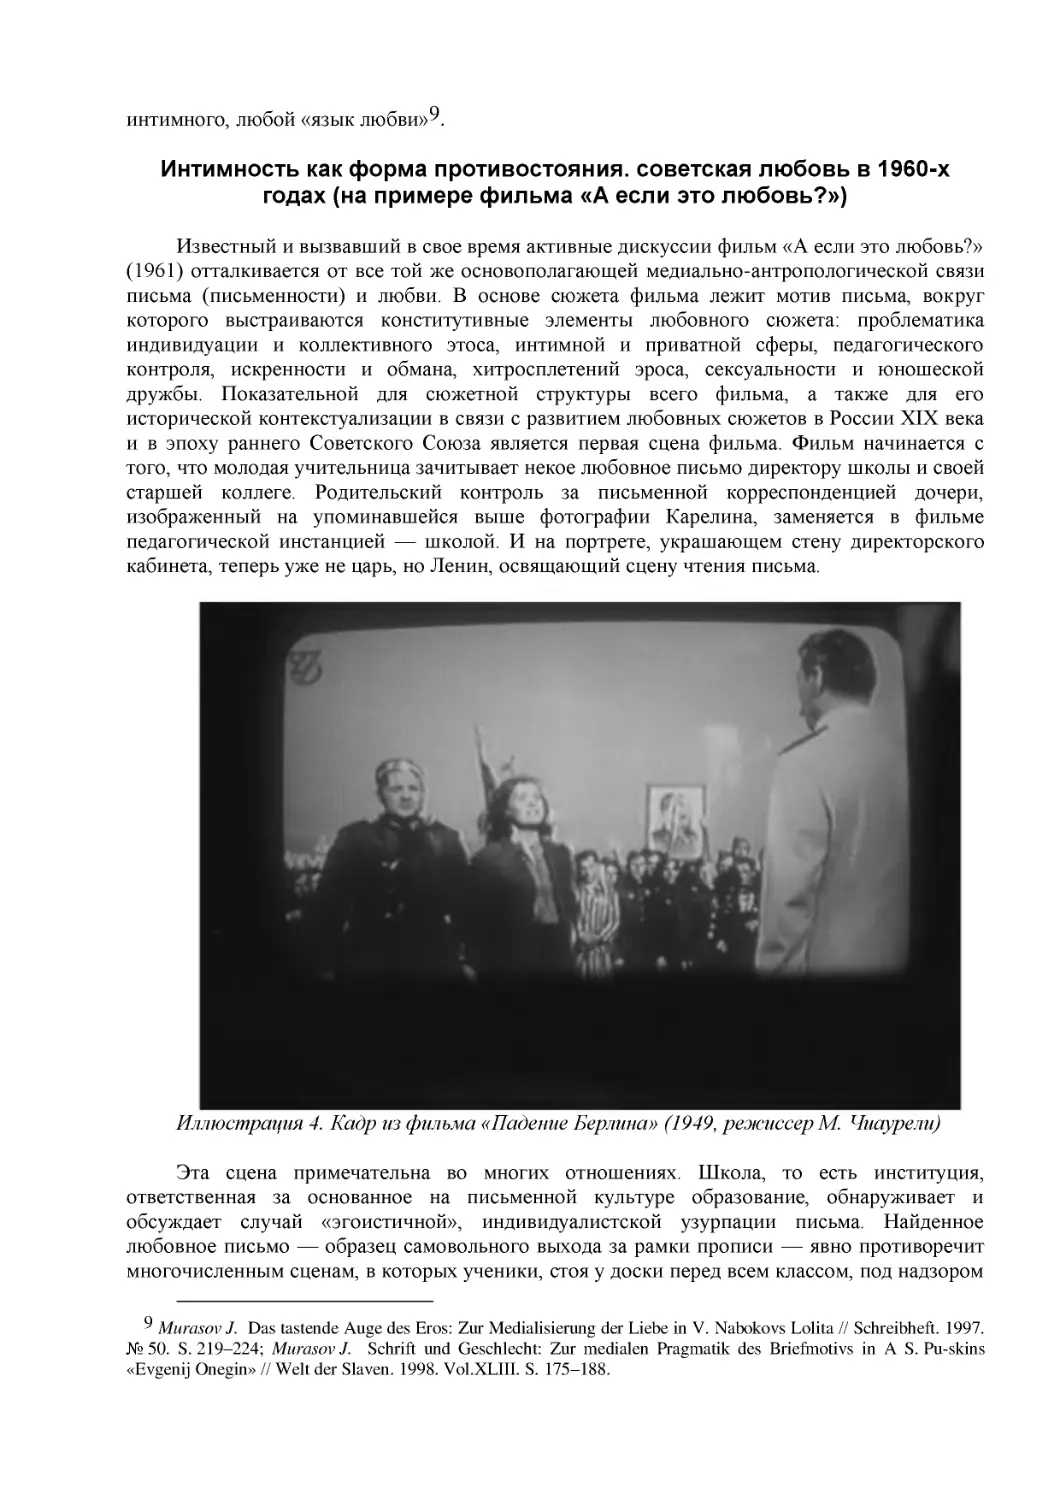 Интимность как форма противостояния. советская любовь в 1960-х годах (на примере фильма «А если это любовь?»)